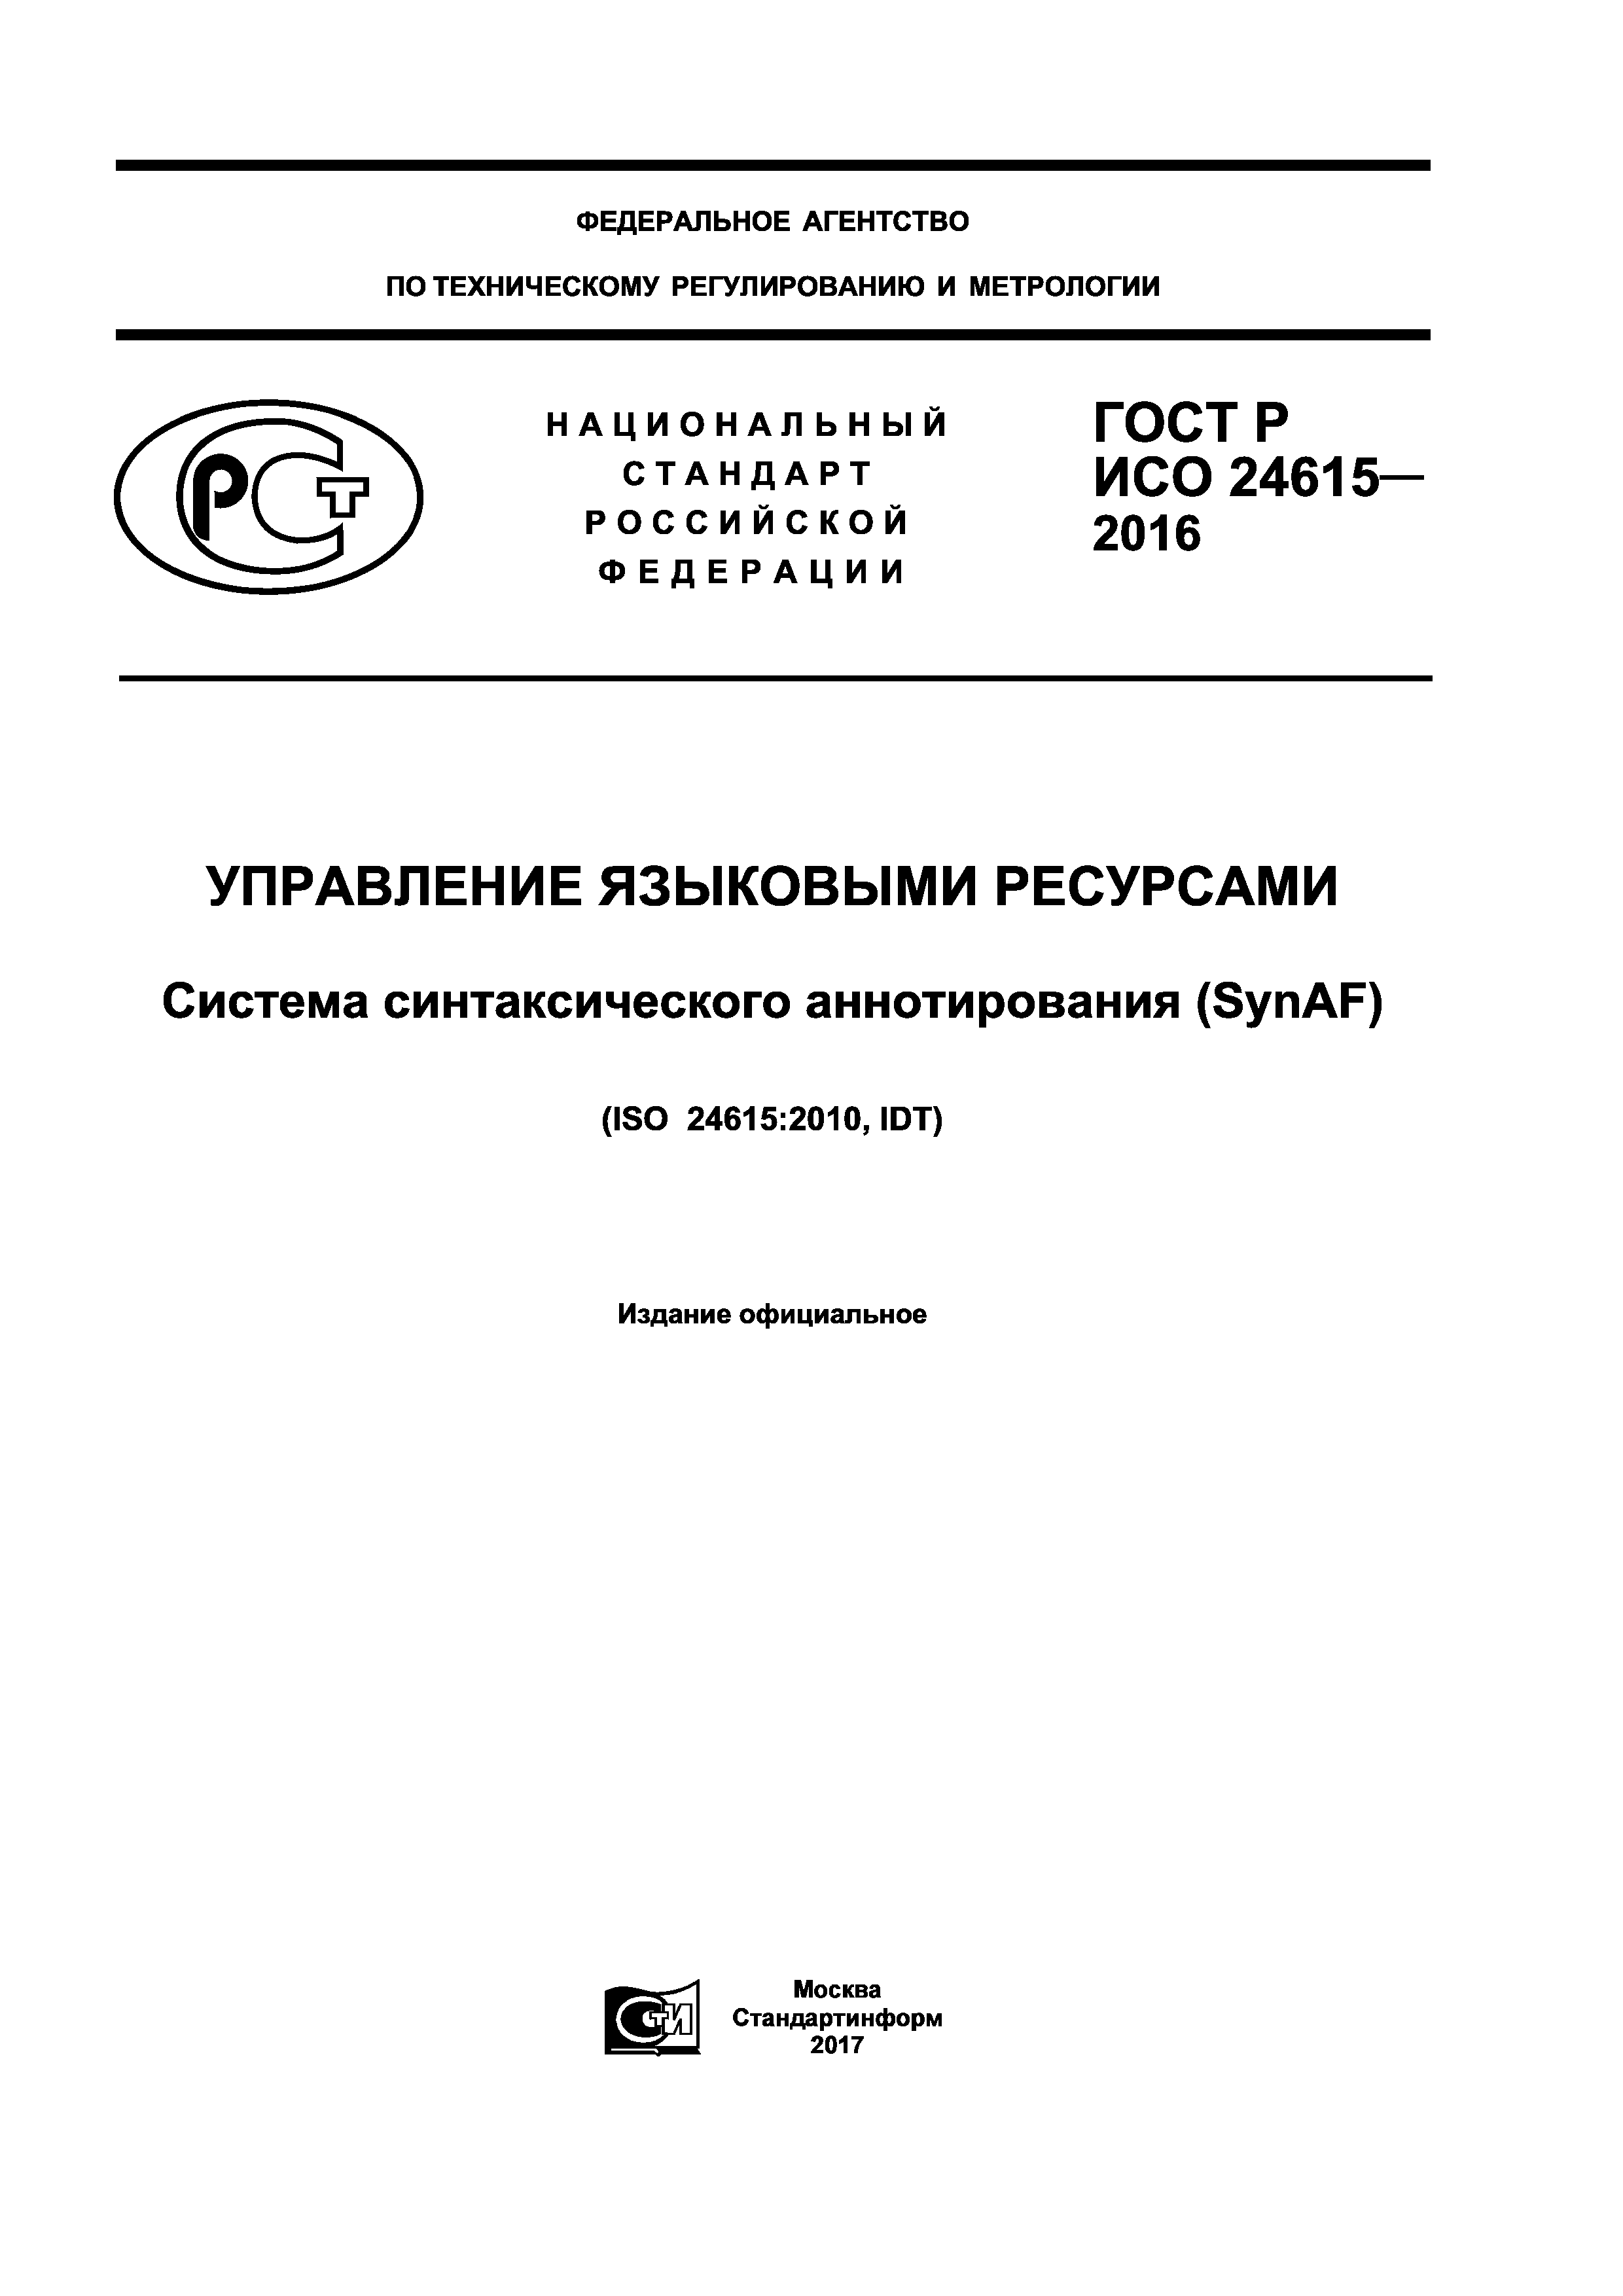 ГОСТ Р ИСО 24615-2016